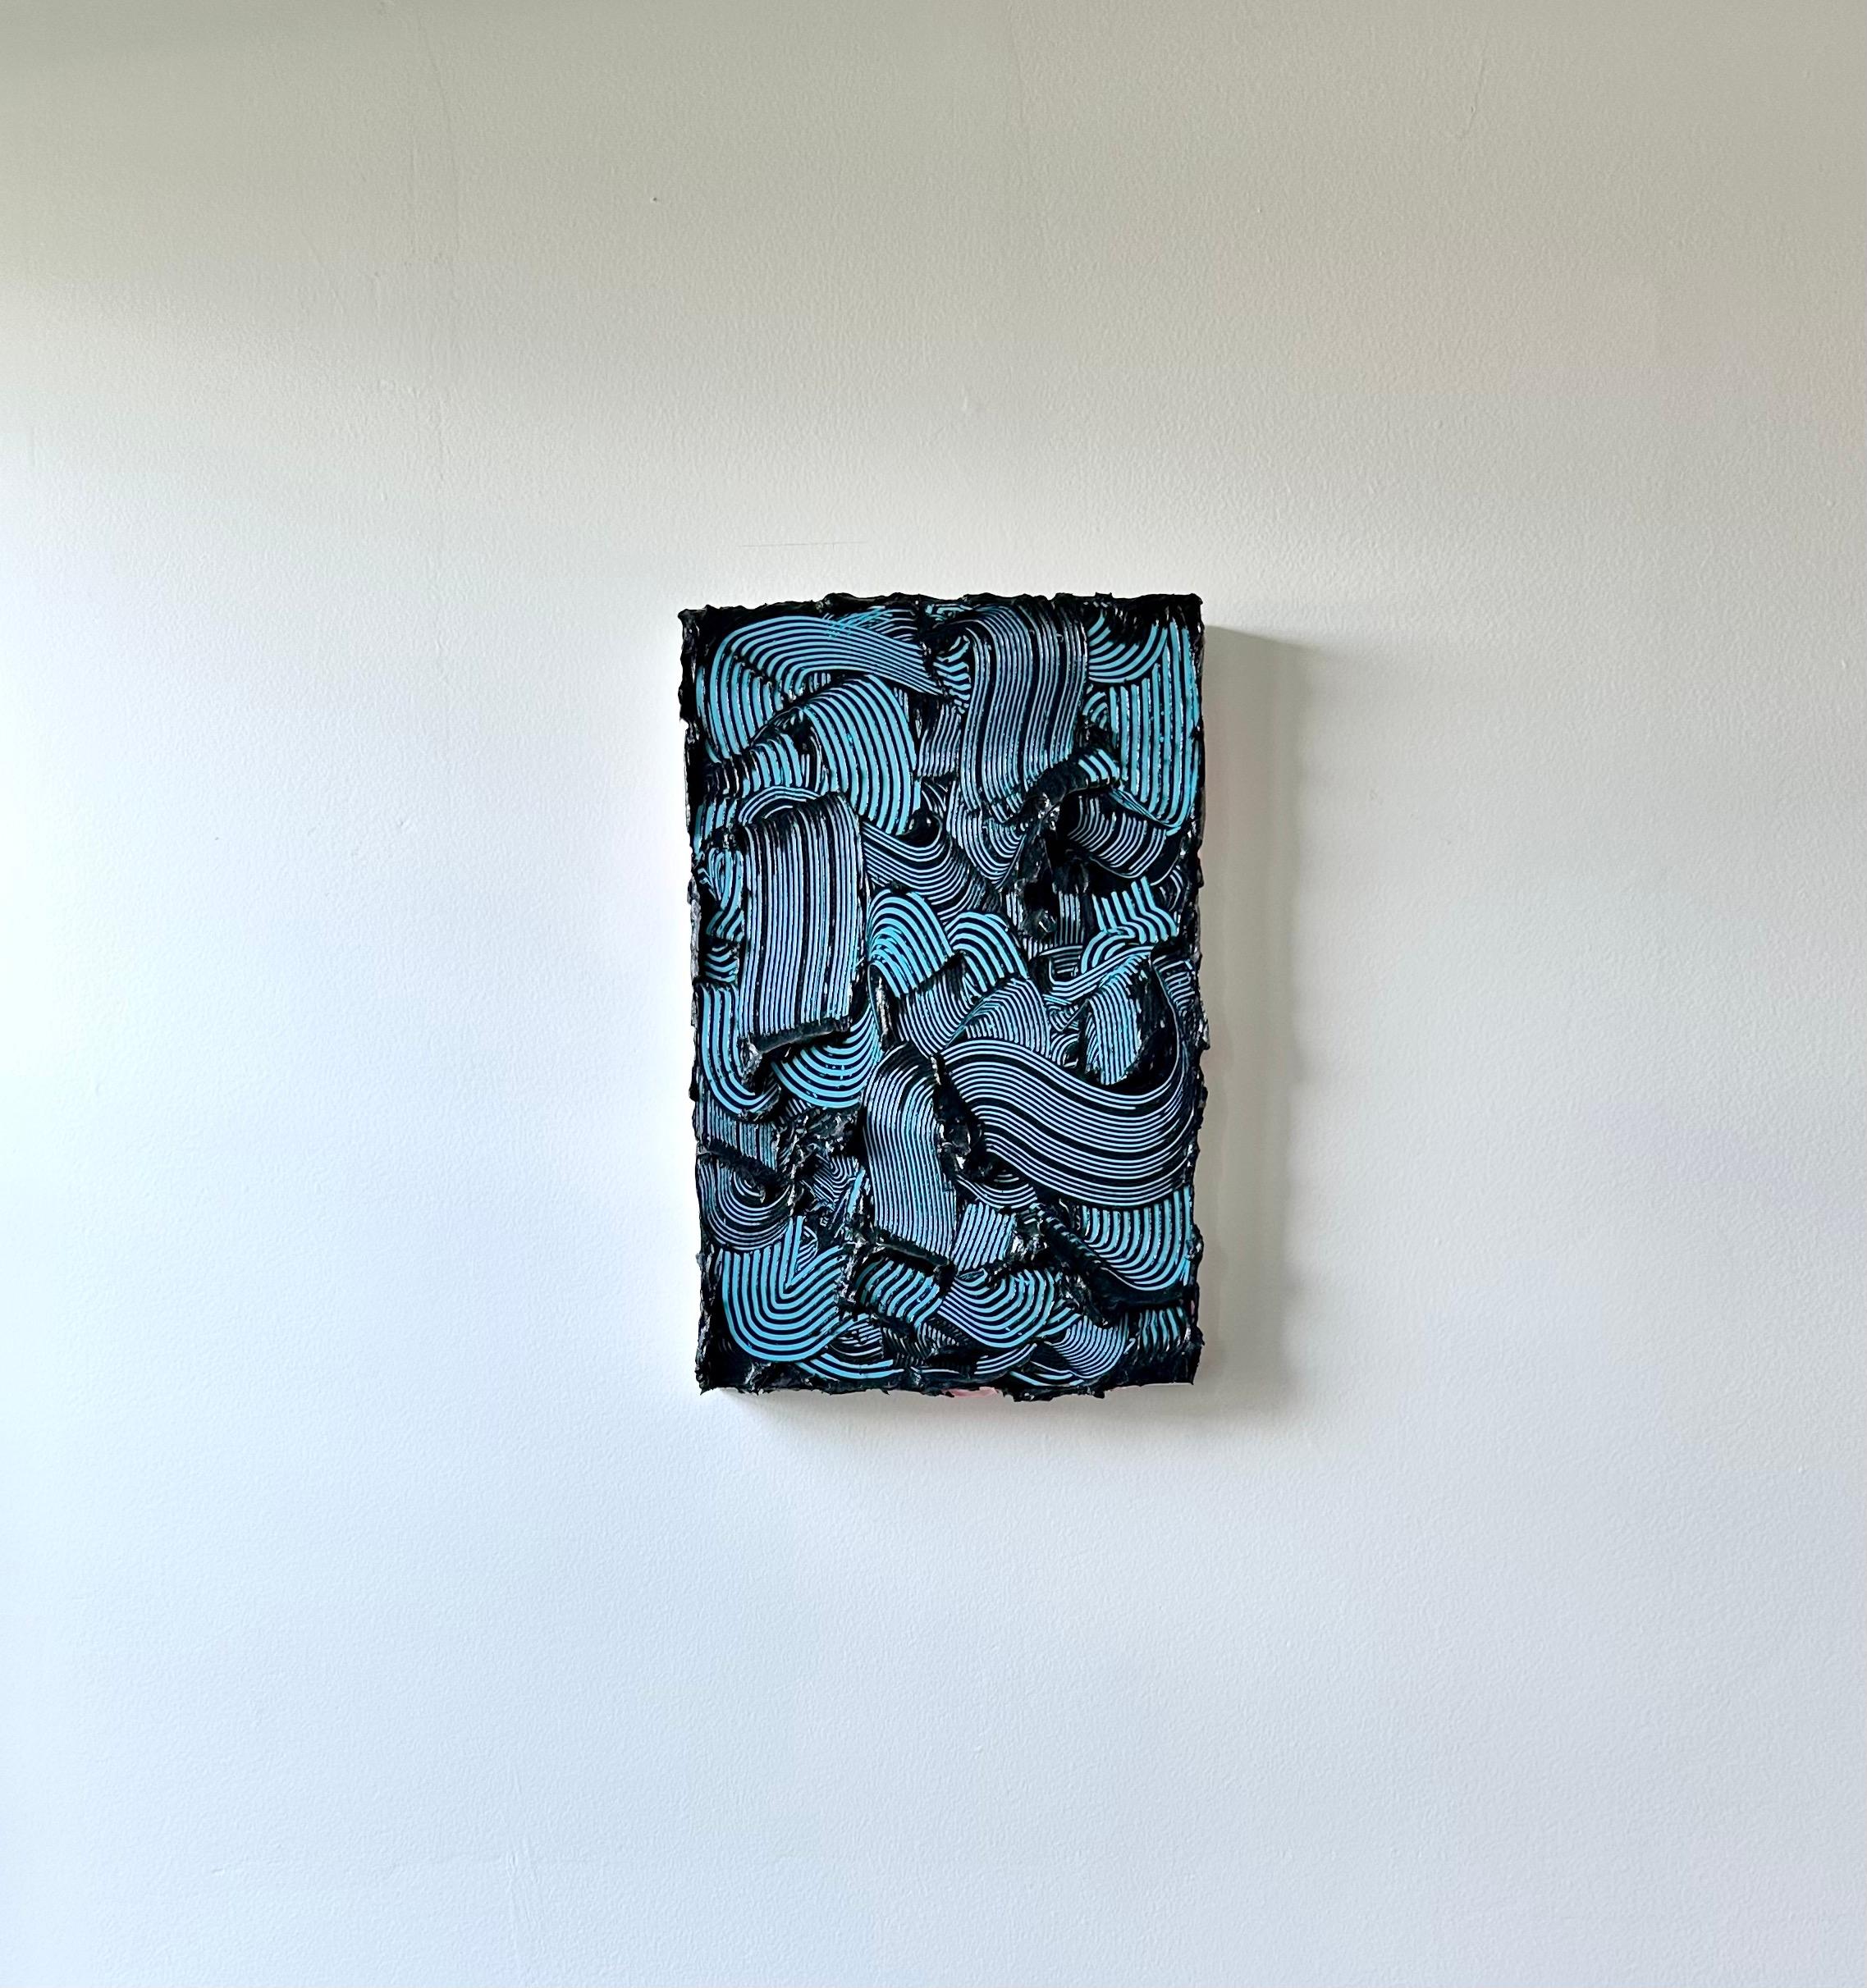 Peinture contemporaine texturée Poseidon, couleurs vives, traits bleus, abstrait - Bleu Abstract Sculpture par Tim Nikiforuk